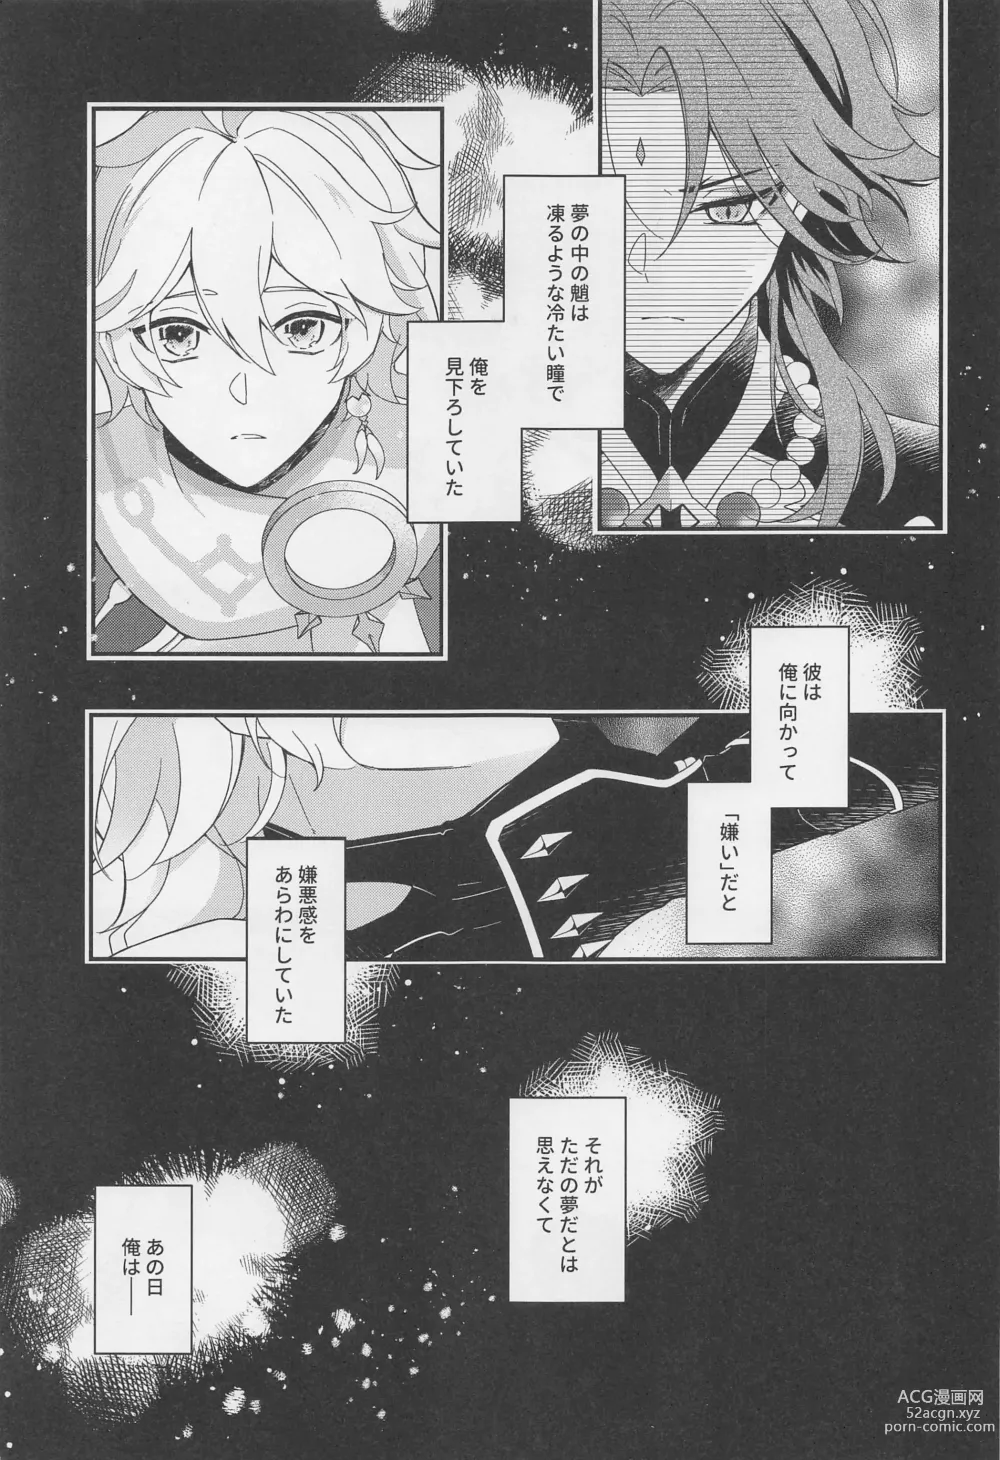 Page 4 of doujinshi Kimi o Wazurau